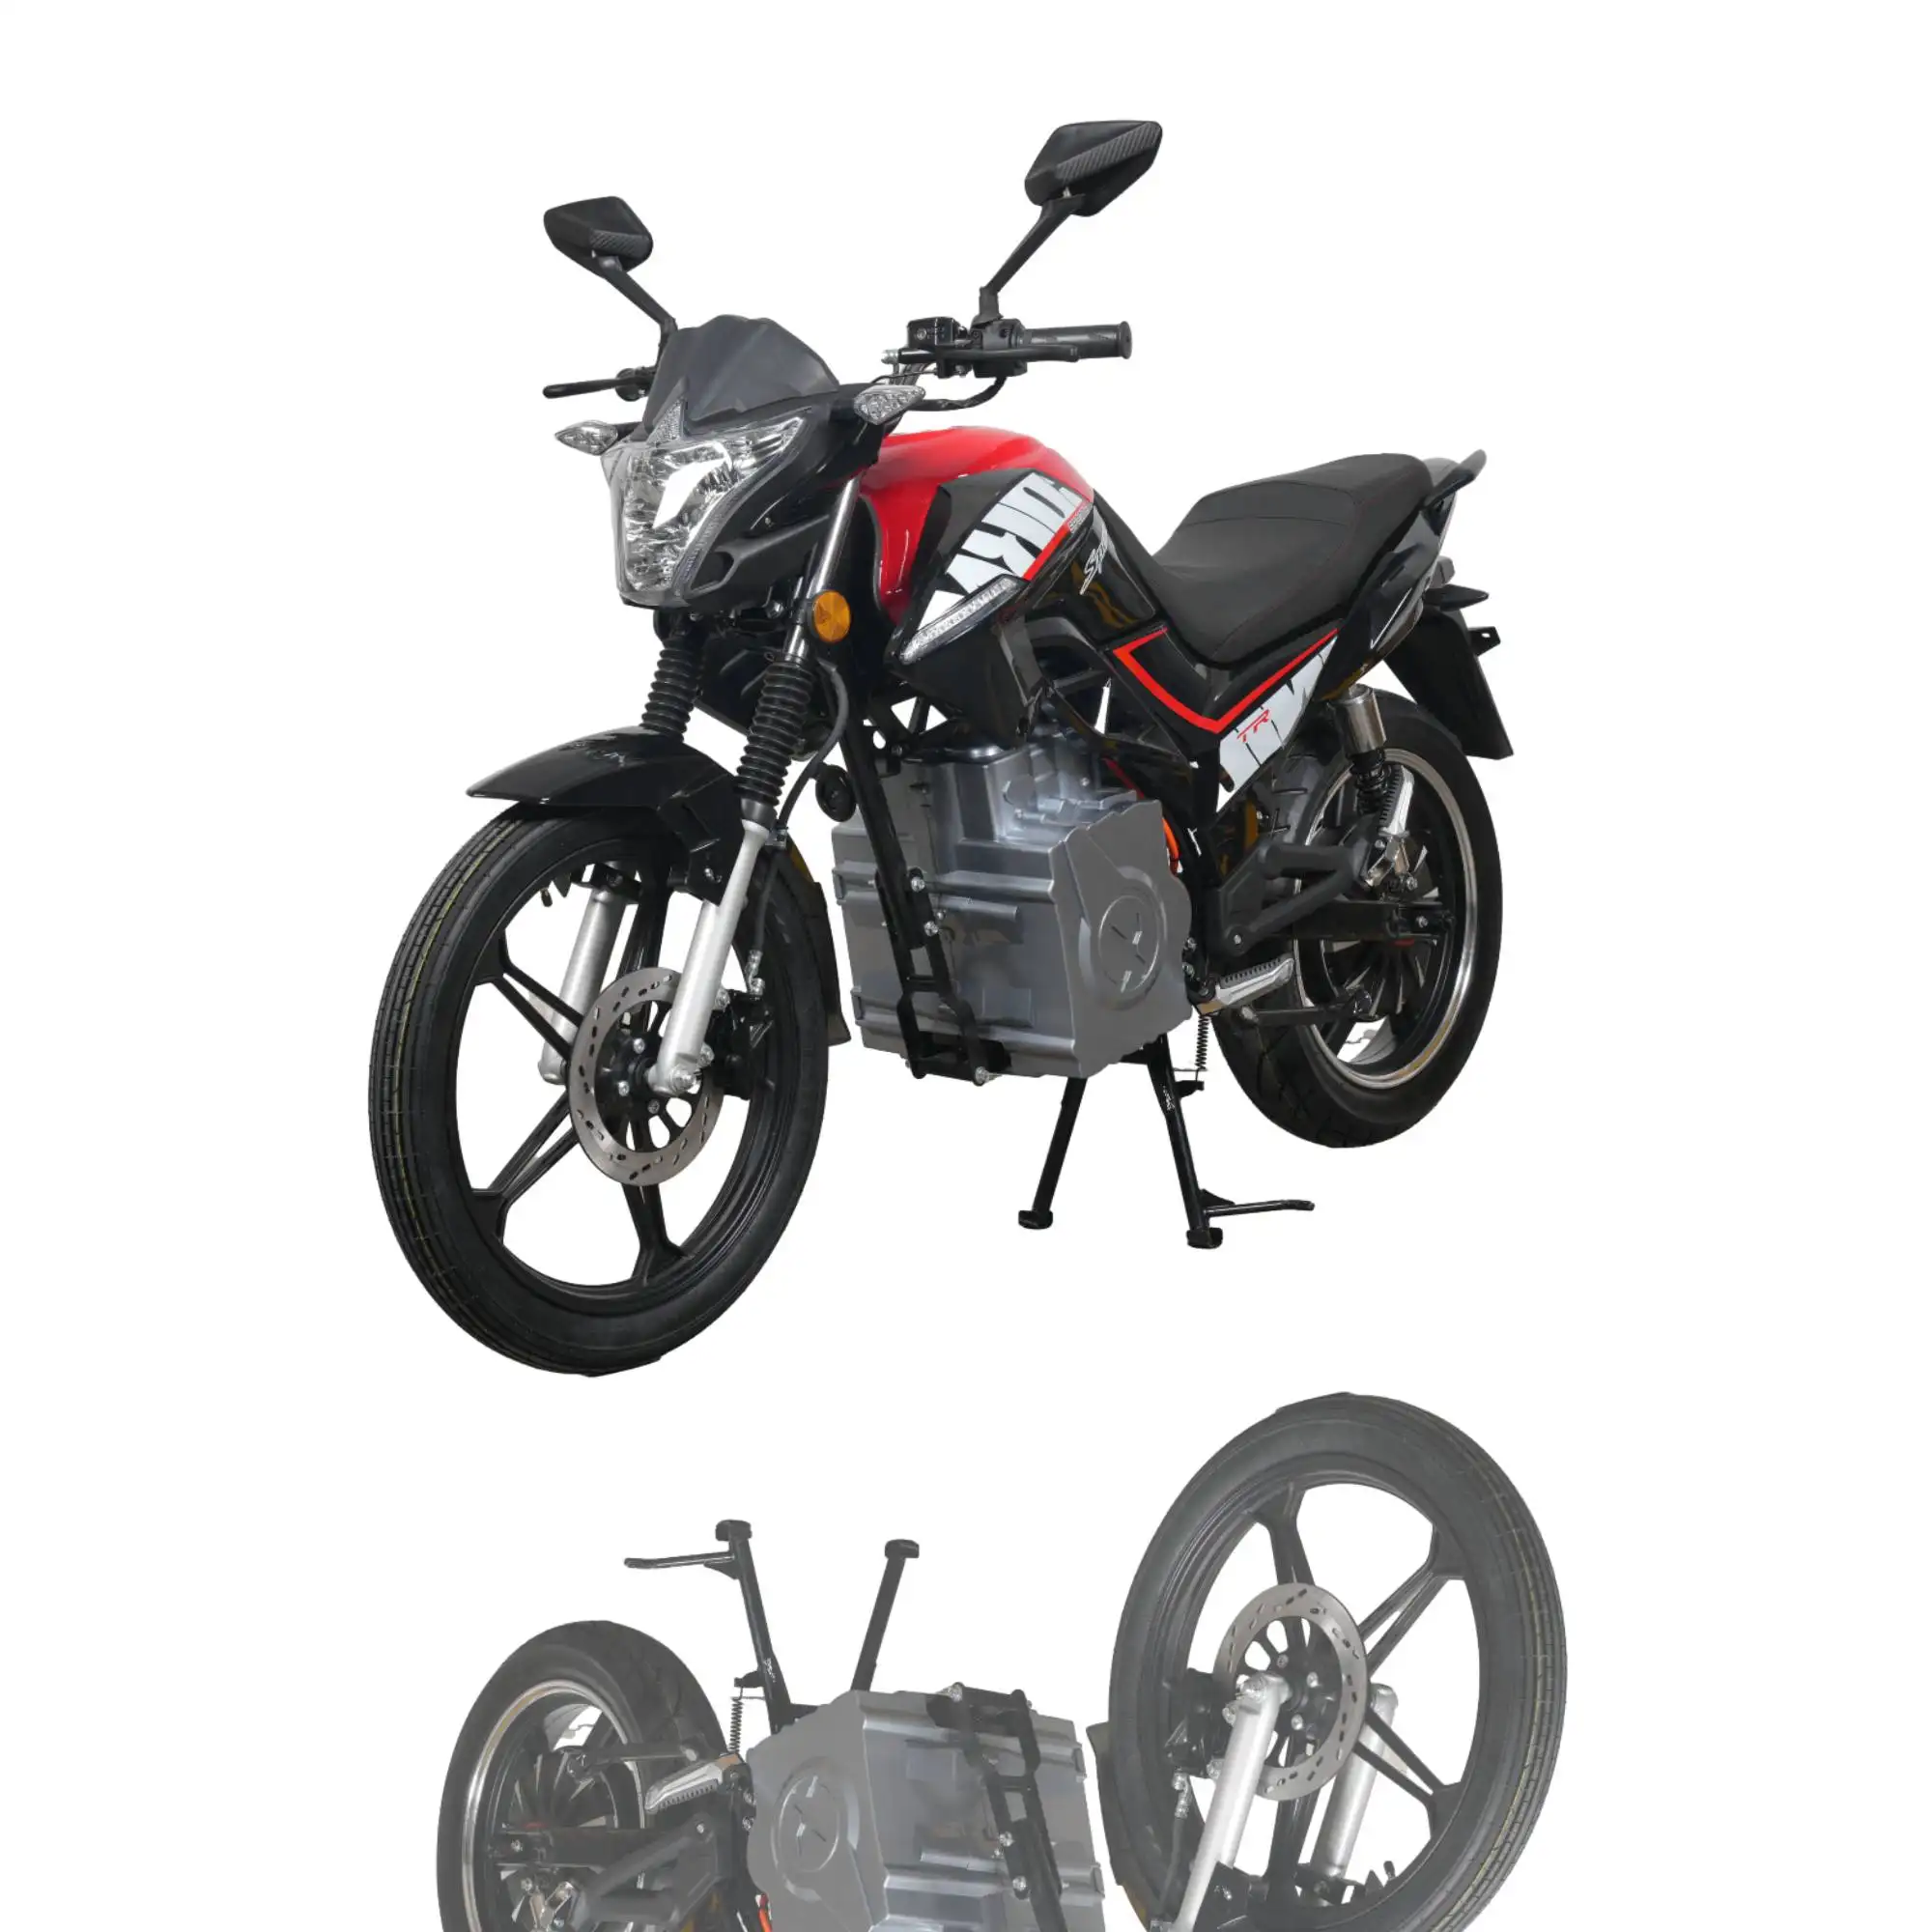 Benutzer definierte 3000w Super Power Chopper Dirt Bike Adult Racing Offroad Elektromotor räder